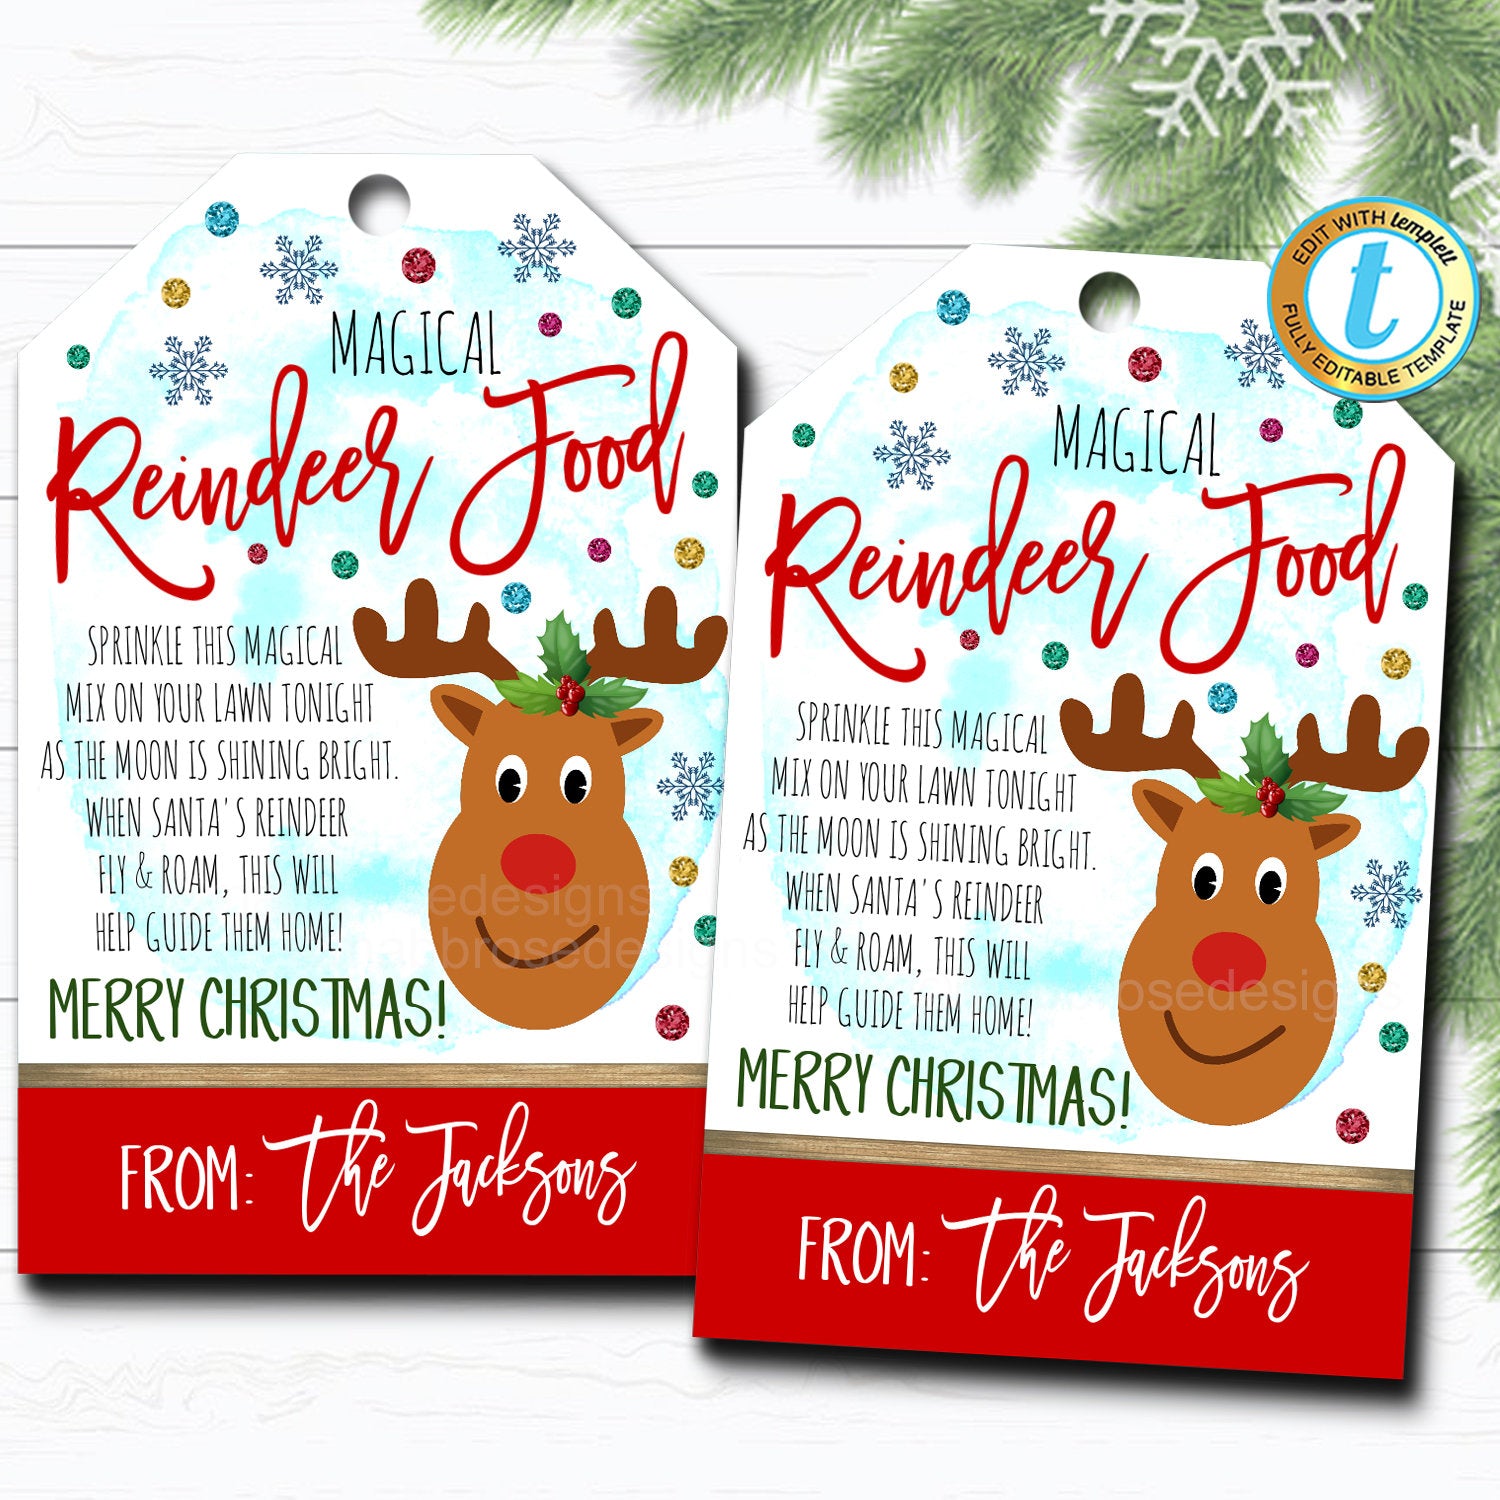 Magic reindeer food christmas gift tag printables